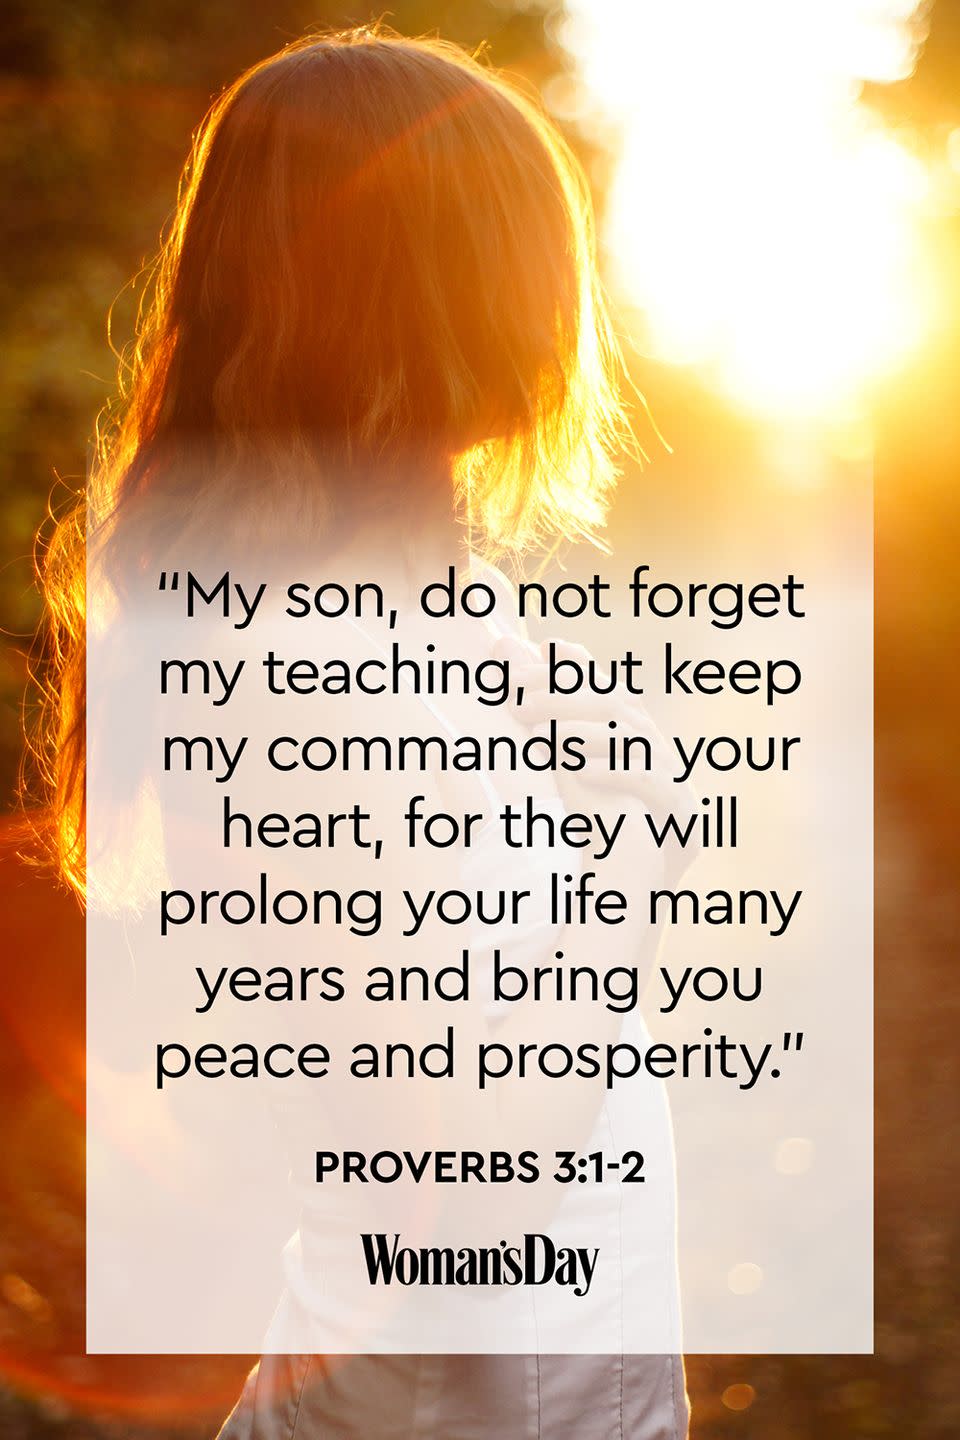 Proverbs 3:1-2